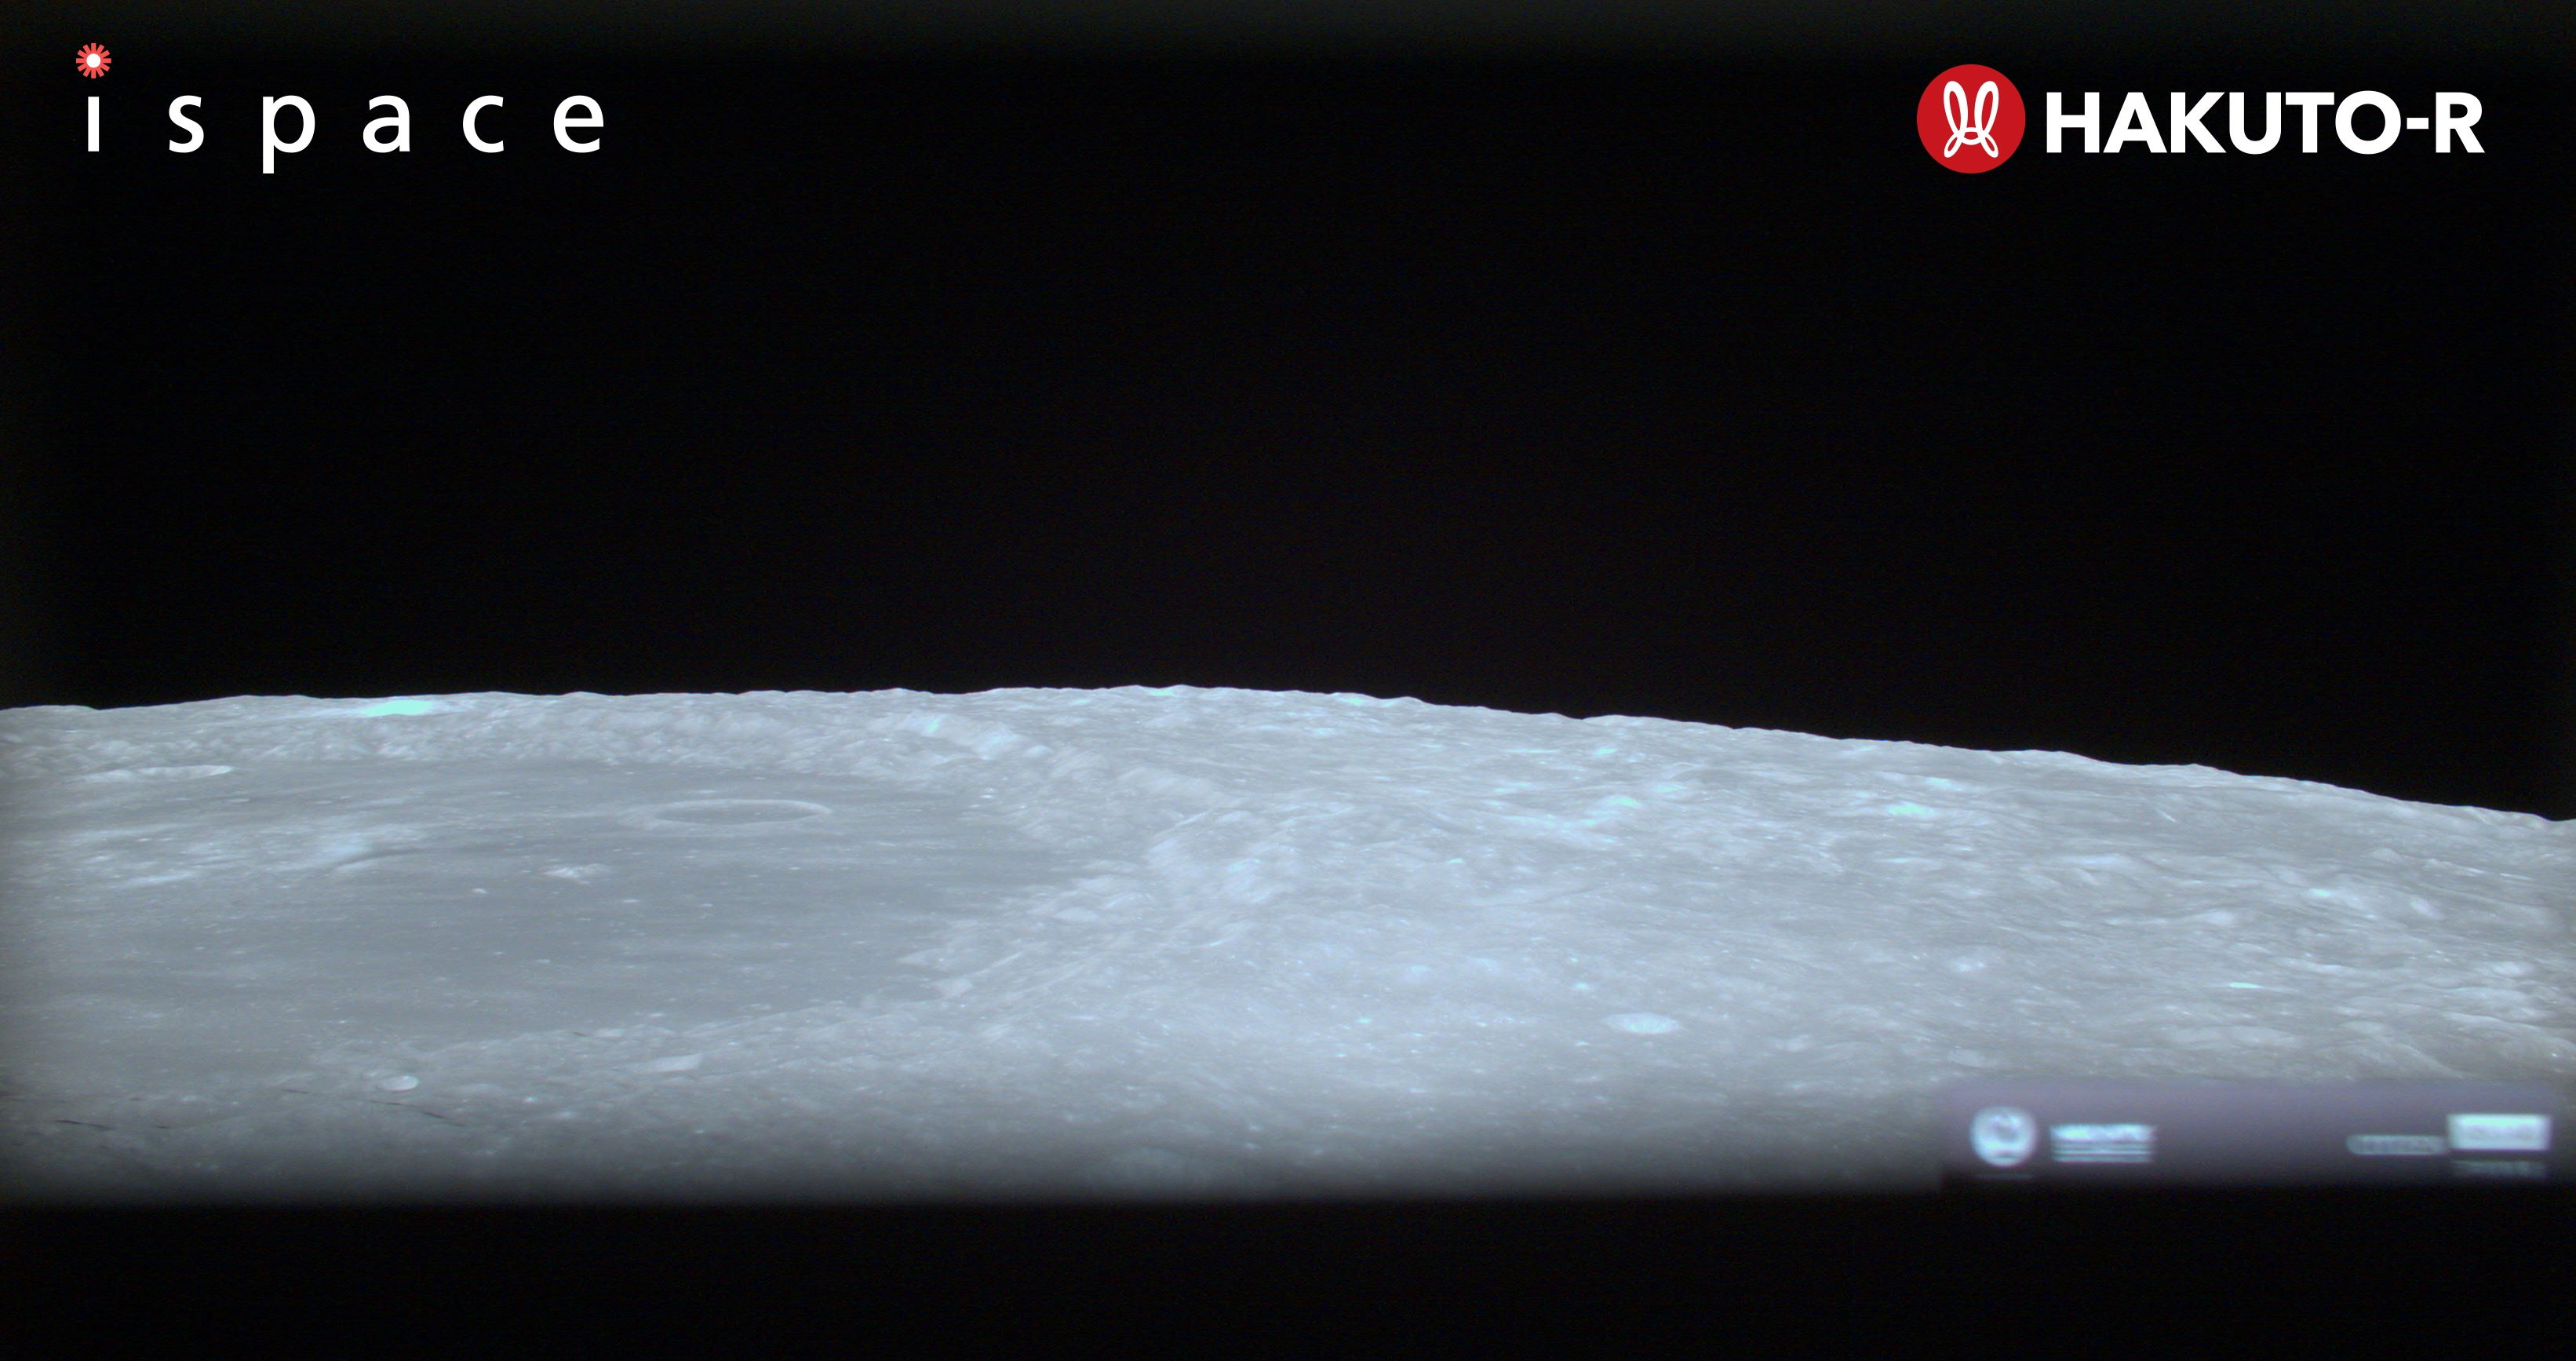 Місяць з висоти 100 кілометрів на знімку&amp;nbsp;Hakuto-R.&amp;nbsp;ispace  / Twitter